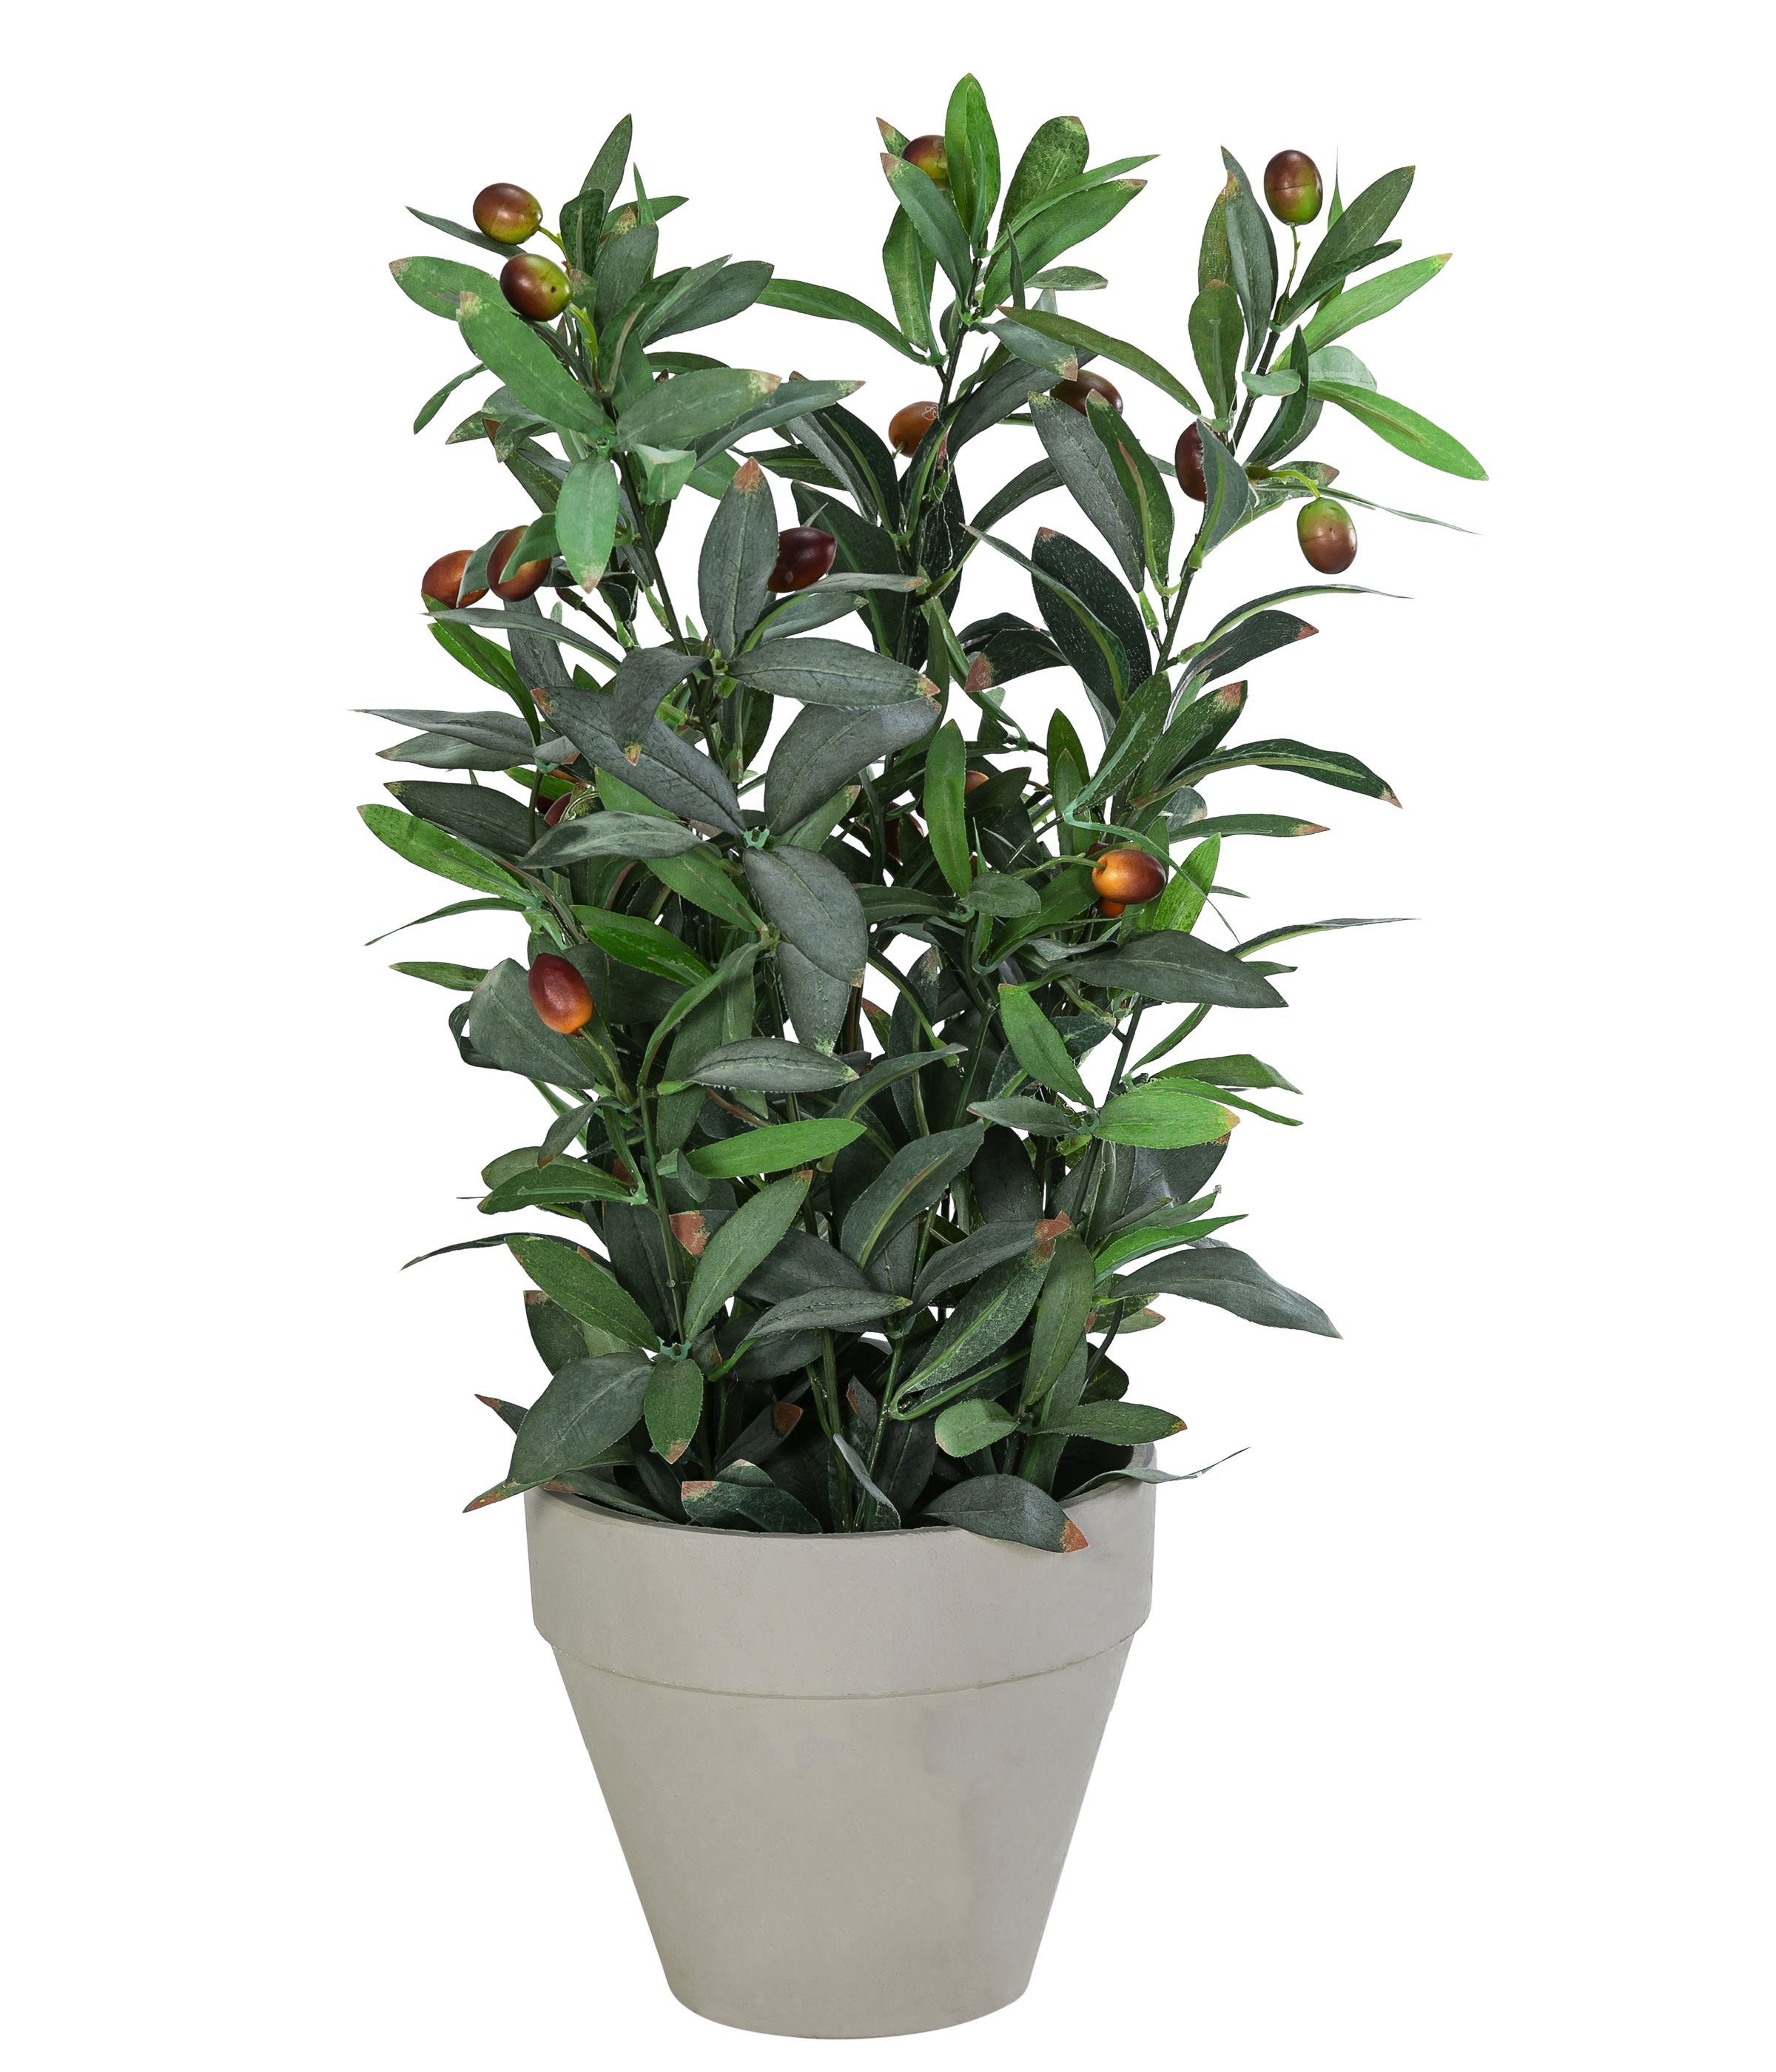 Kunstpflanze Olivenbaum, Polyester/Metall/Papier, ca. 20 42 x x Keine cm cm, 51 verschiedene Dehner, 20 Angabe, Höhe Topfgrößen, grün/grau